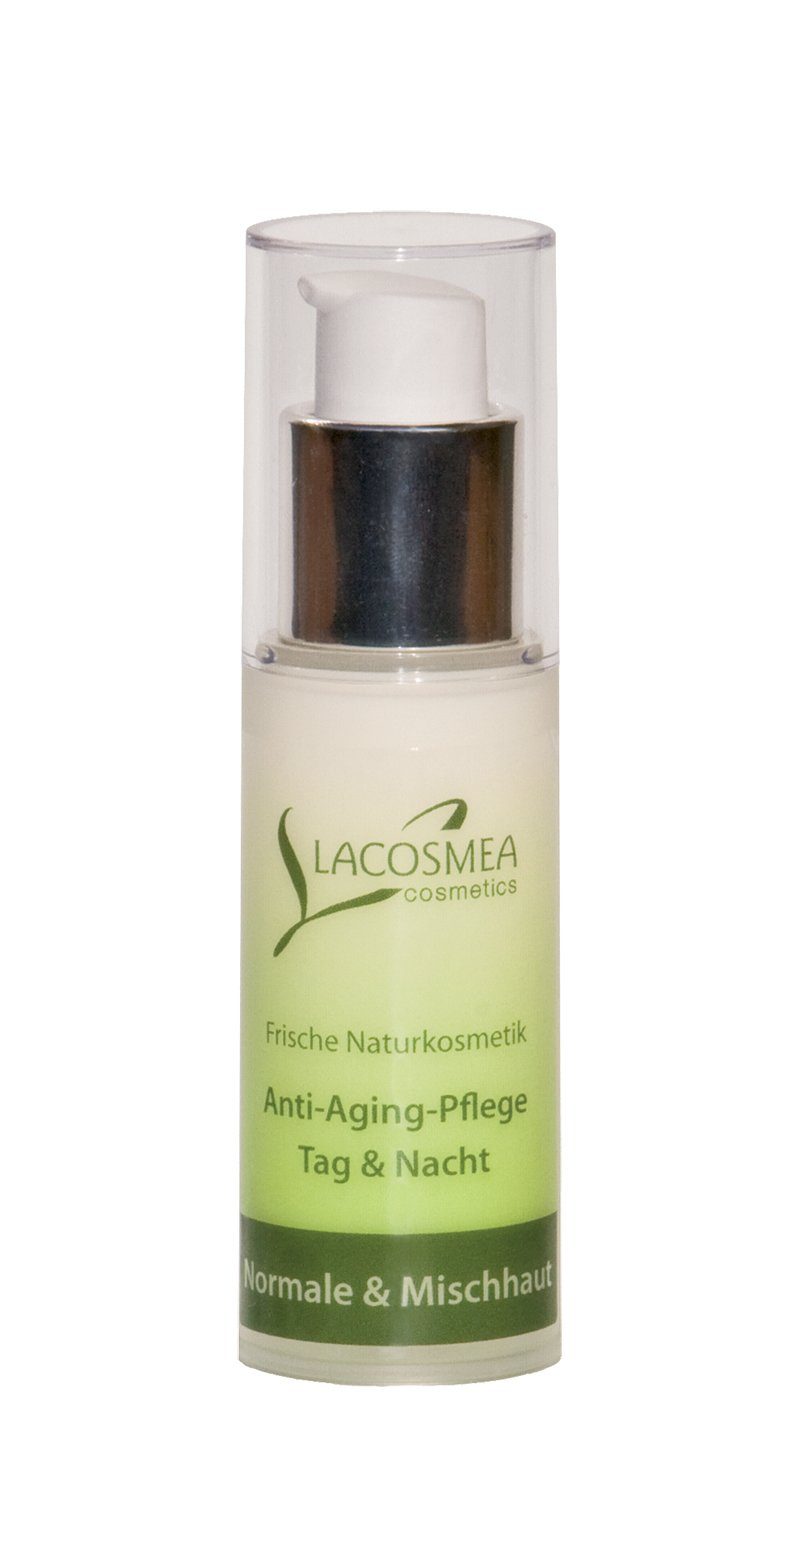 Aging & Gesichtspflege Cosmetics Mischhaut normale für Lacosmea Anti Pflege